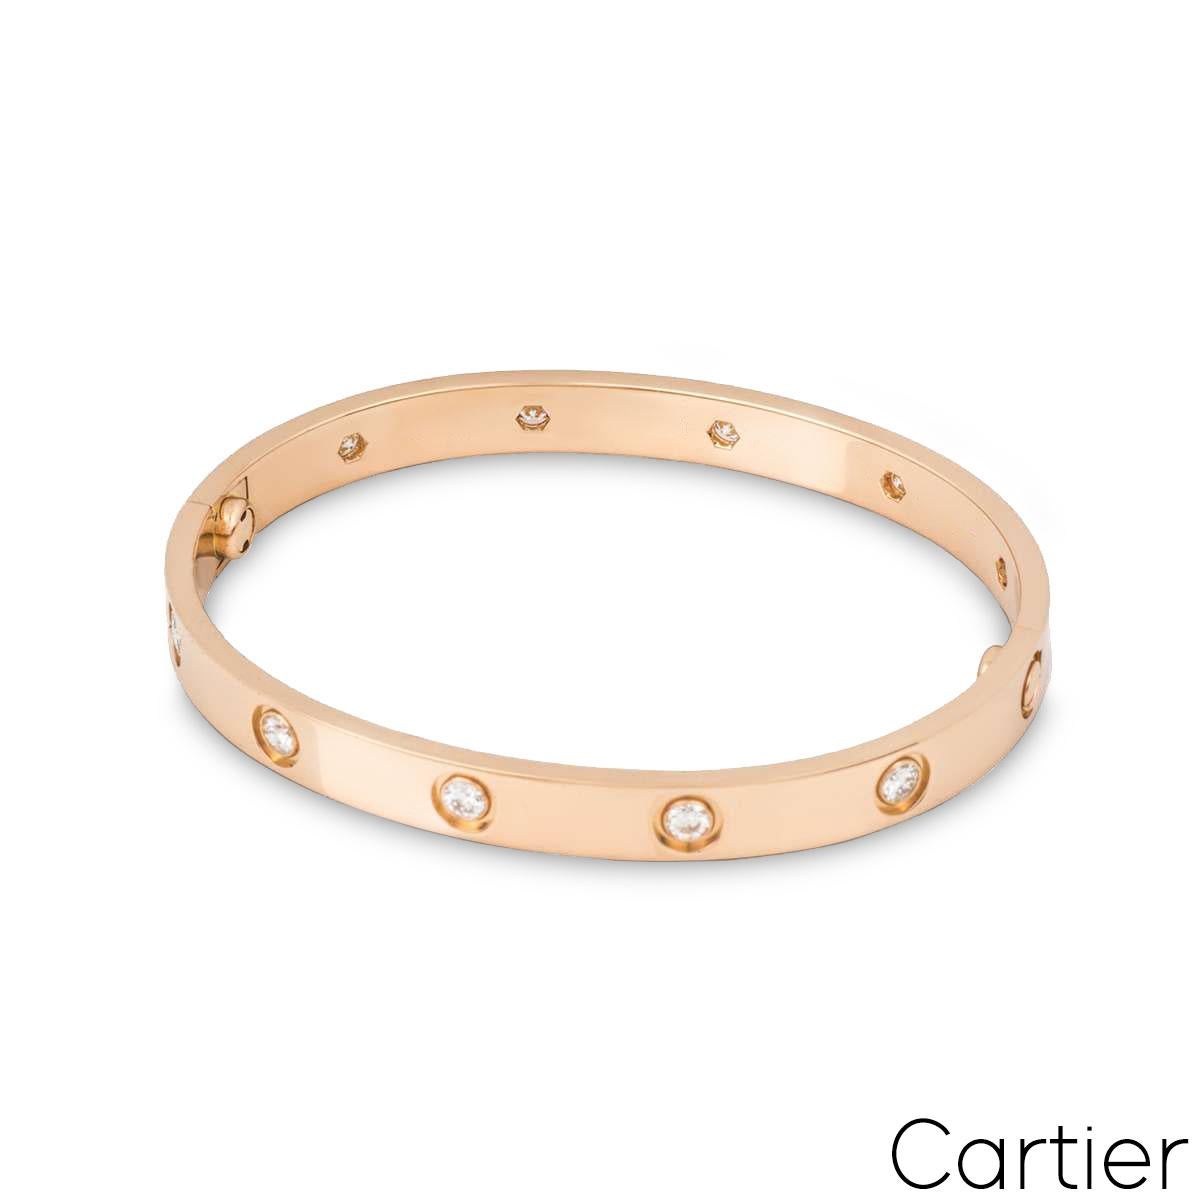 Ein 18k Roségold voll Diamant Love Armband von Cartier. Das Armband ist mit 10 runden Diamanten im Brillantschliff besetzt, die am äußeren Rand umlaufen und insgesamt 0,96ct ausmachen. Das Armband hat die Größe 17, die neue Verschraubung und ein